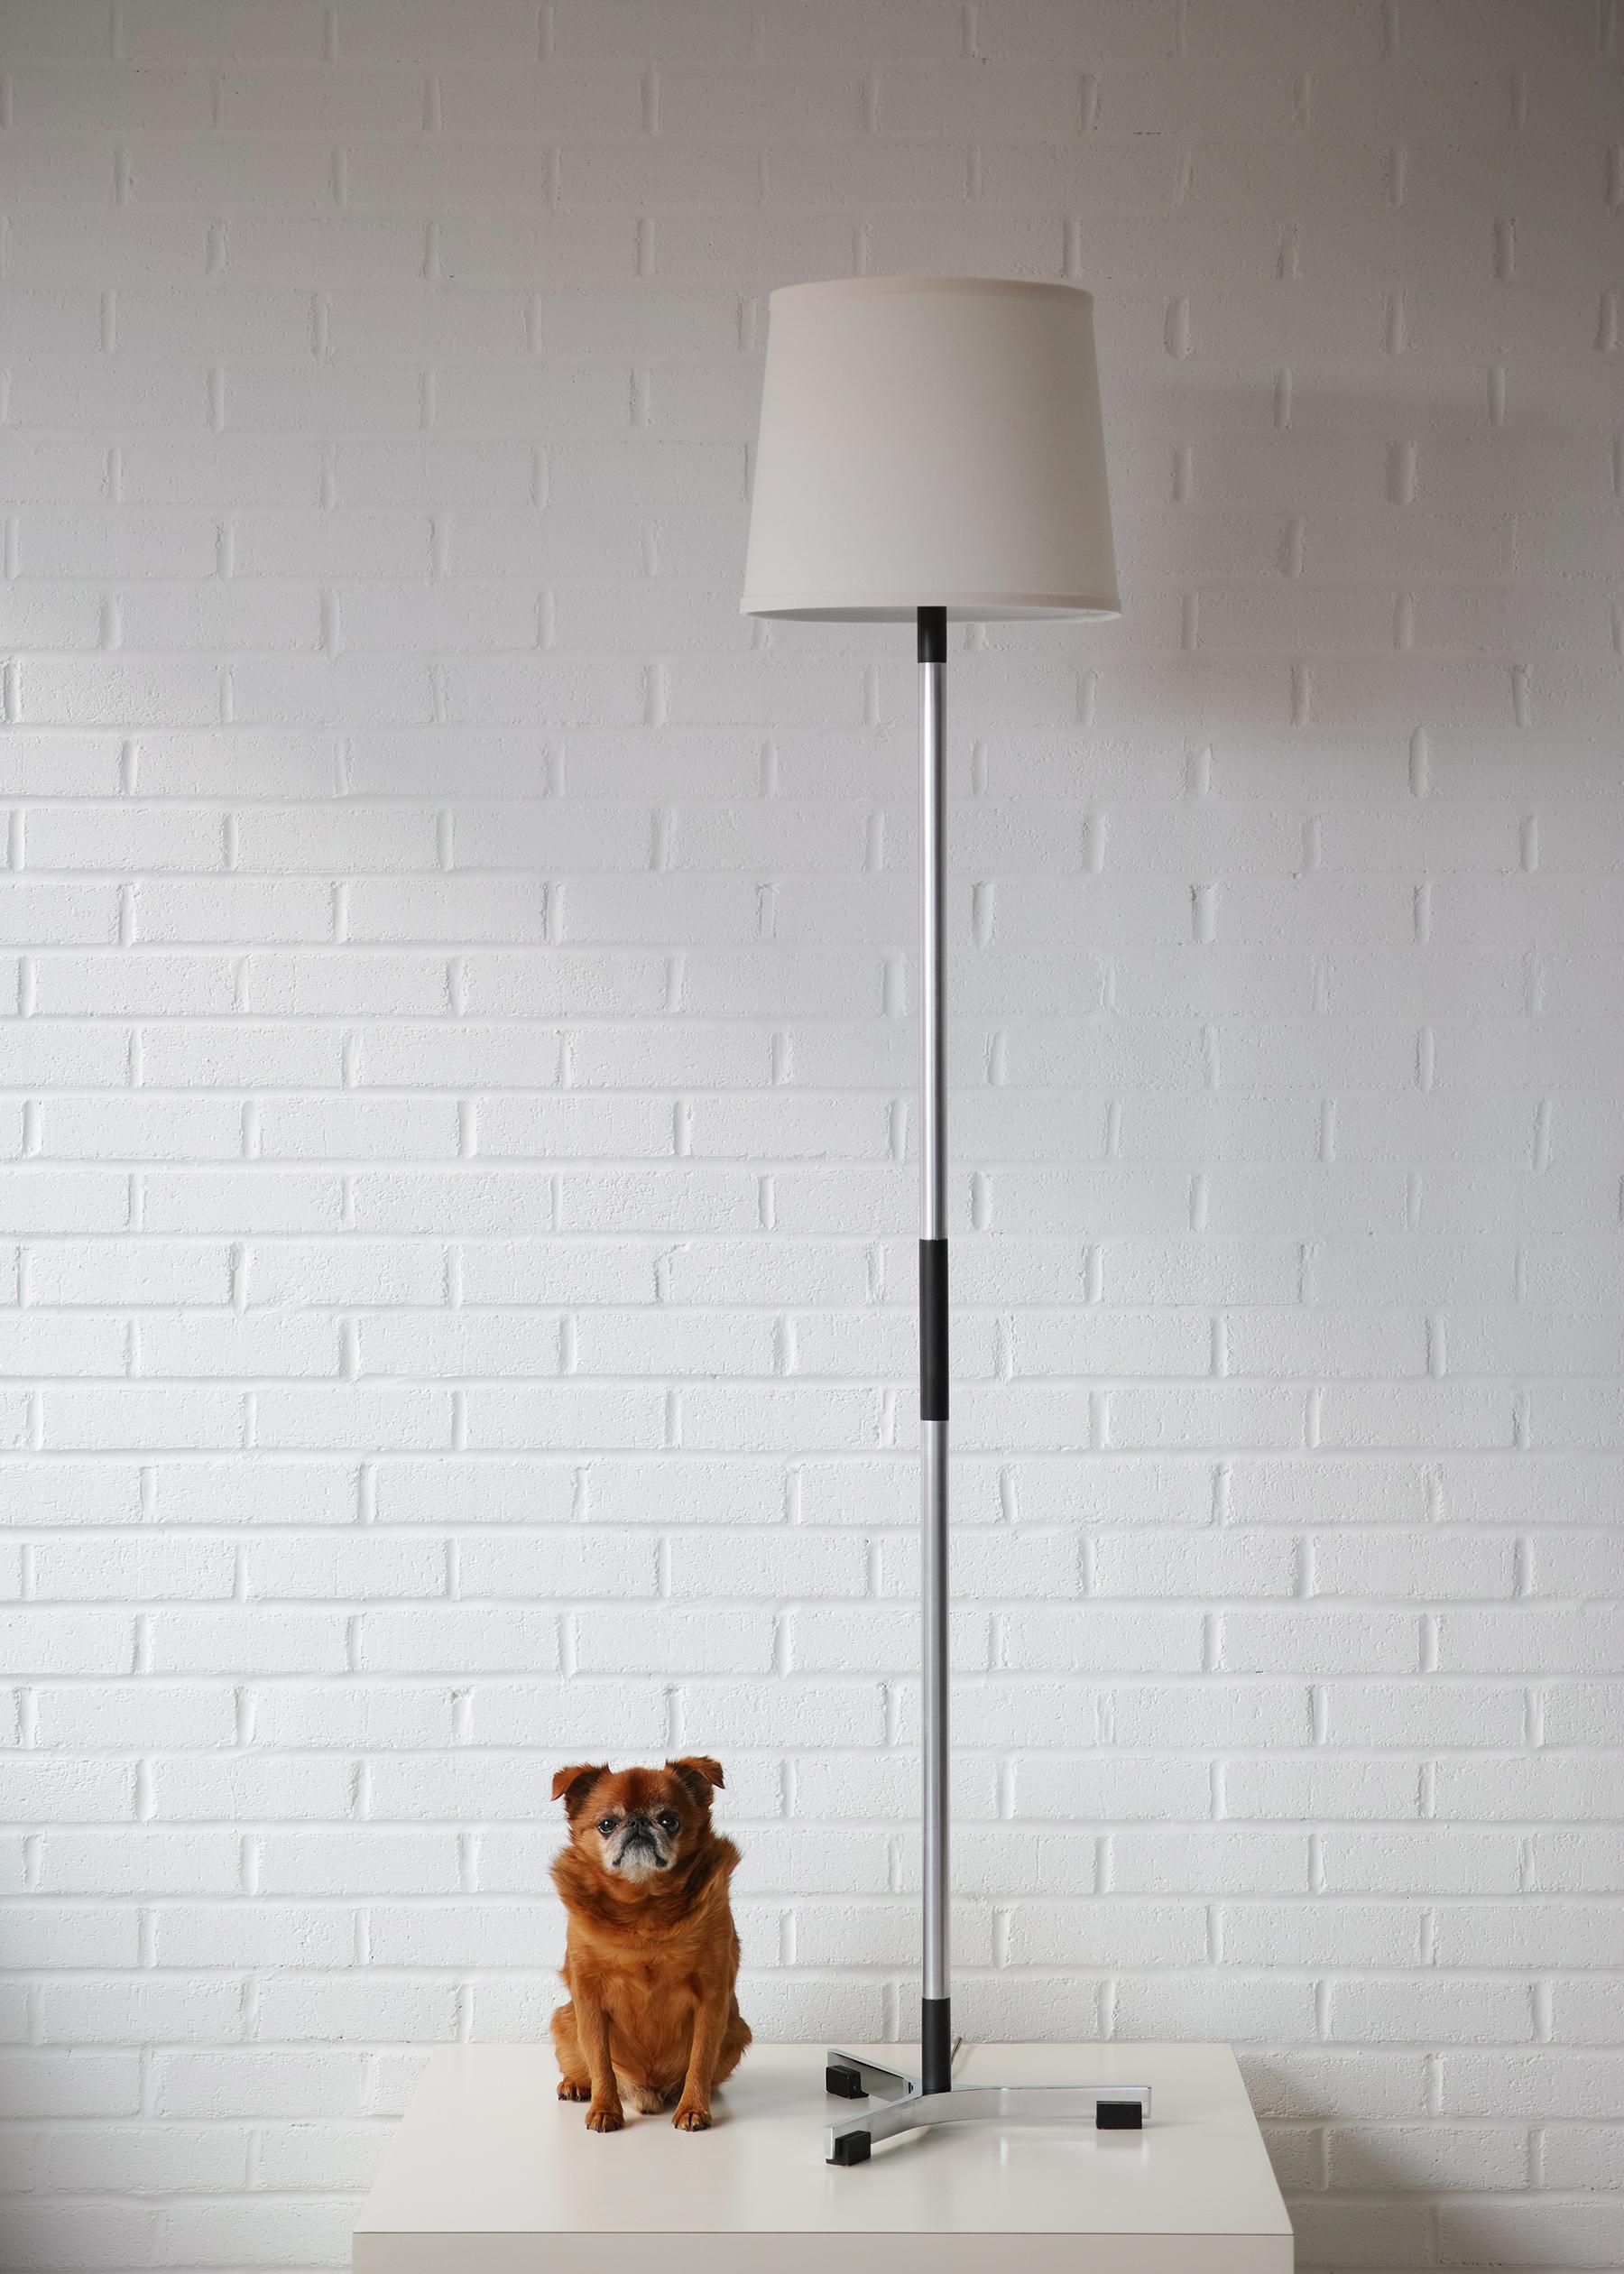 Nous vous proposons ce lampadaire Danish Modern President conçu par Jo Hammerborg pour Fog and Mørup. Il est composé d'acier poli et de bois ébénisé. La base du trépied repose sur des pieds en bois, et l'arbre de la colonne alterne entre le métal et